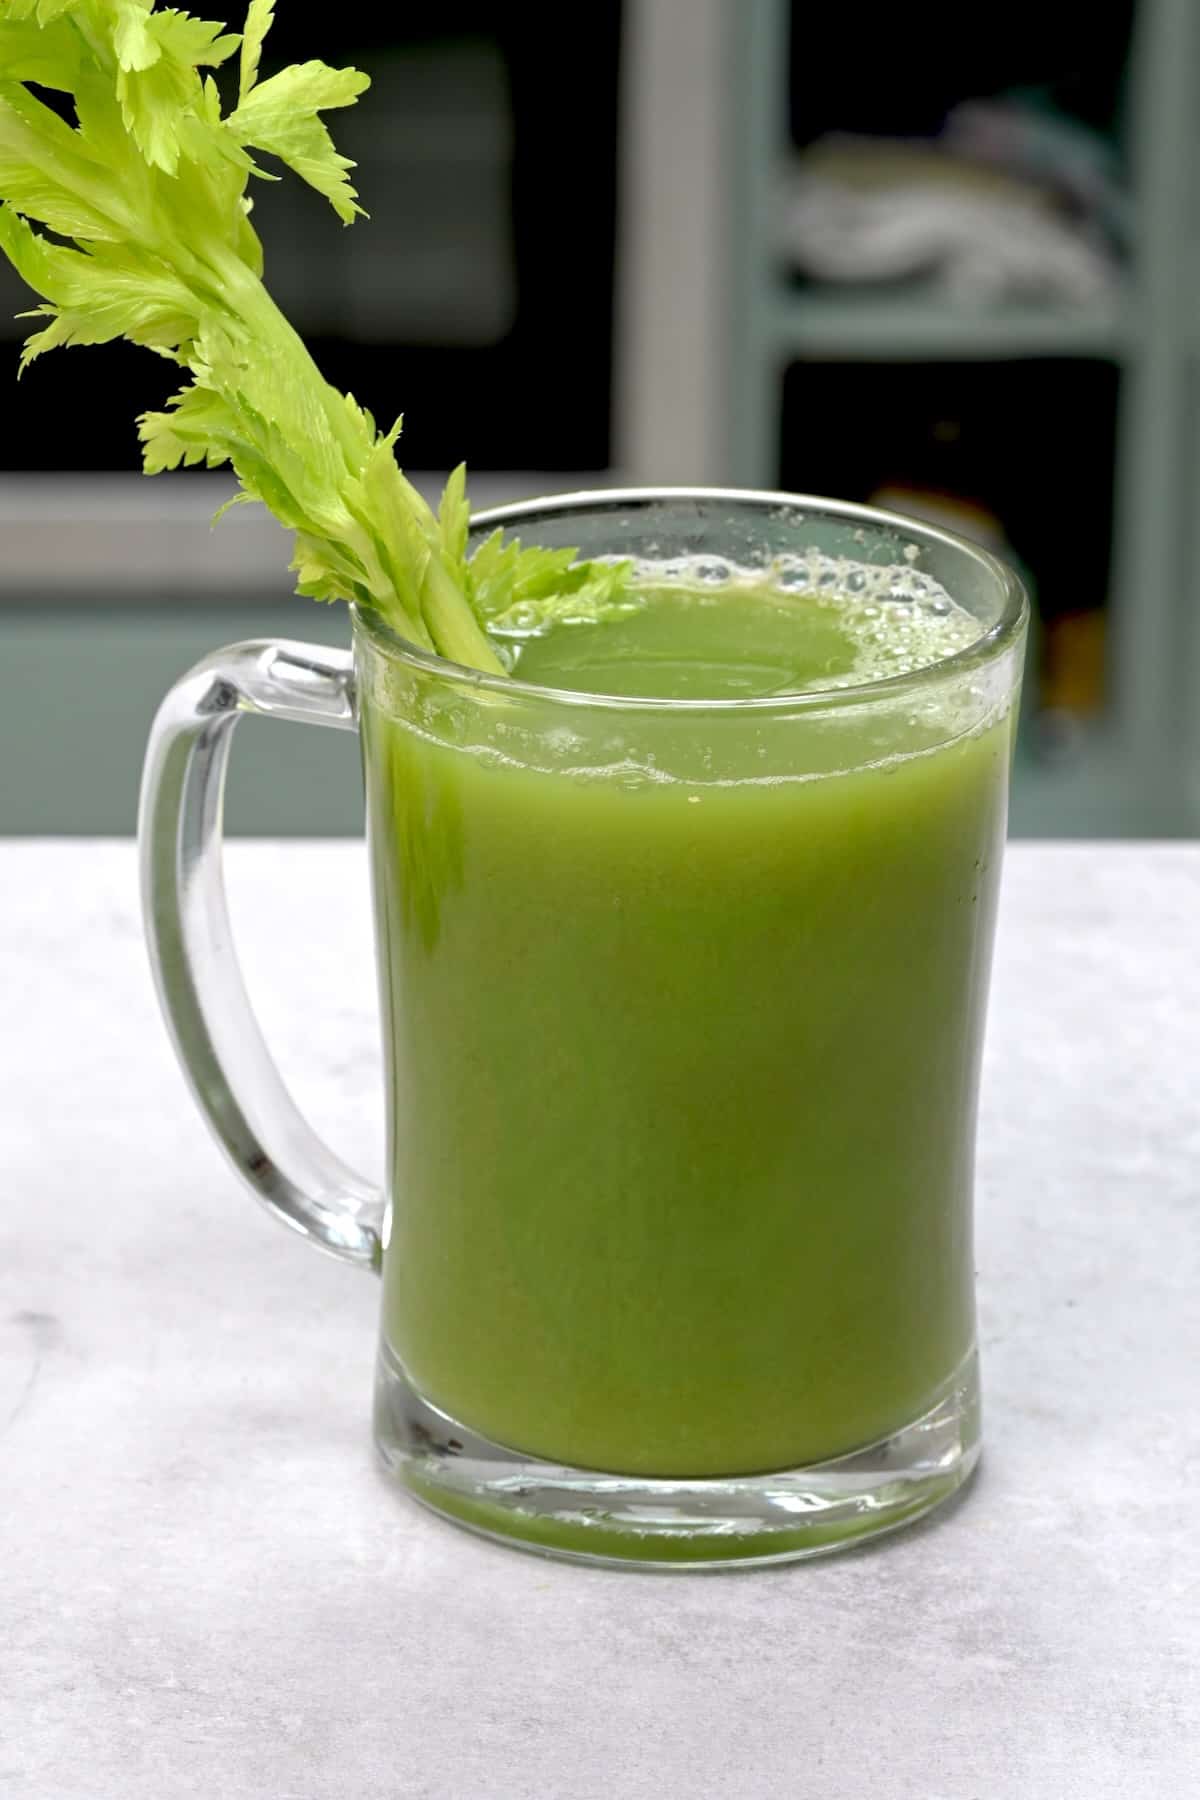 A glass of celery juice and a celery stalk